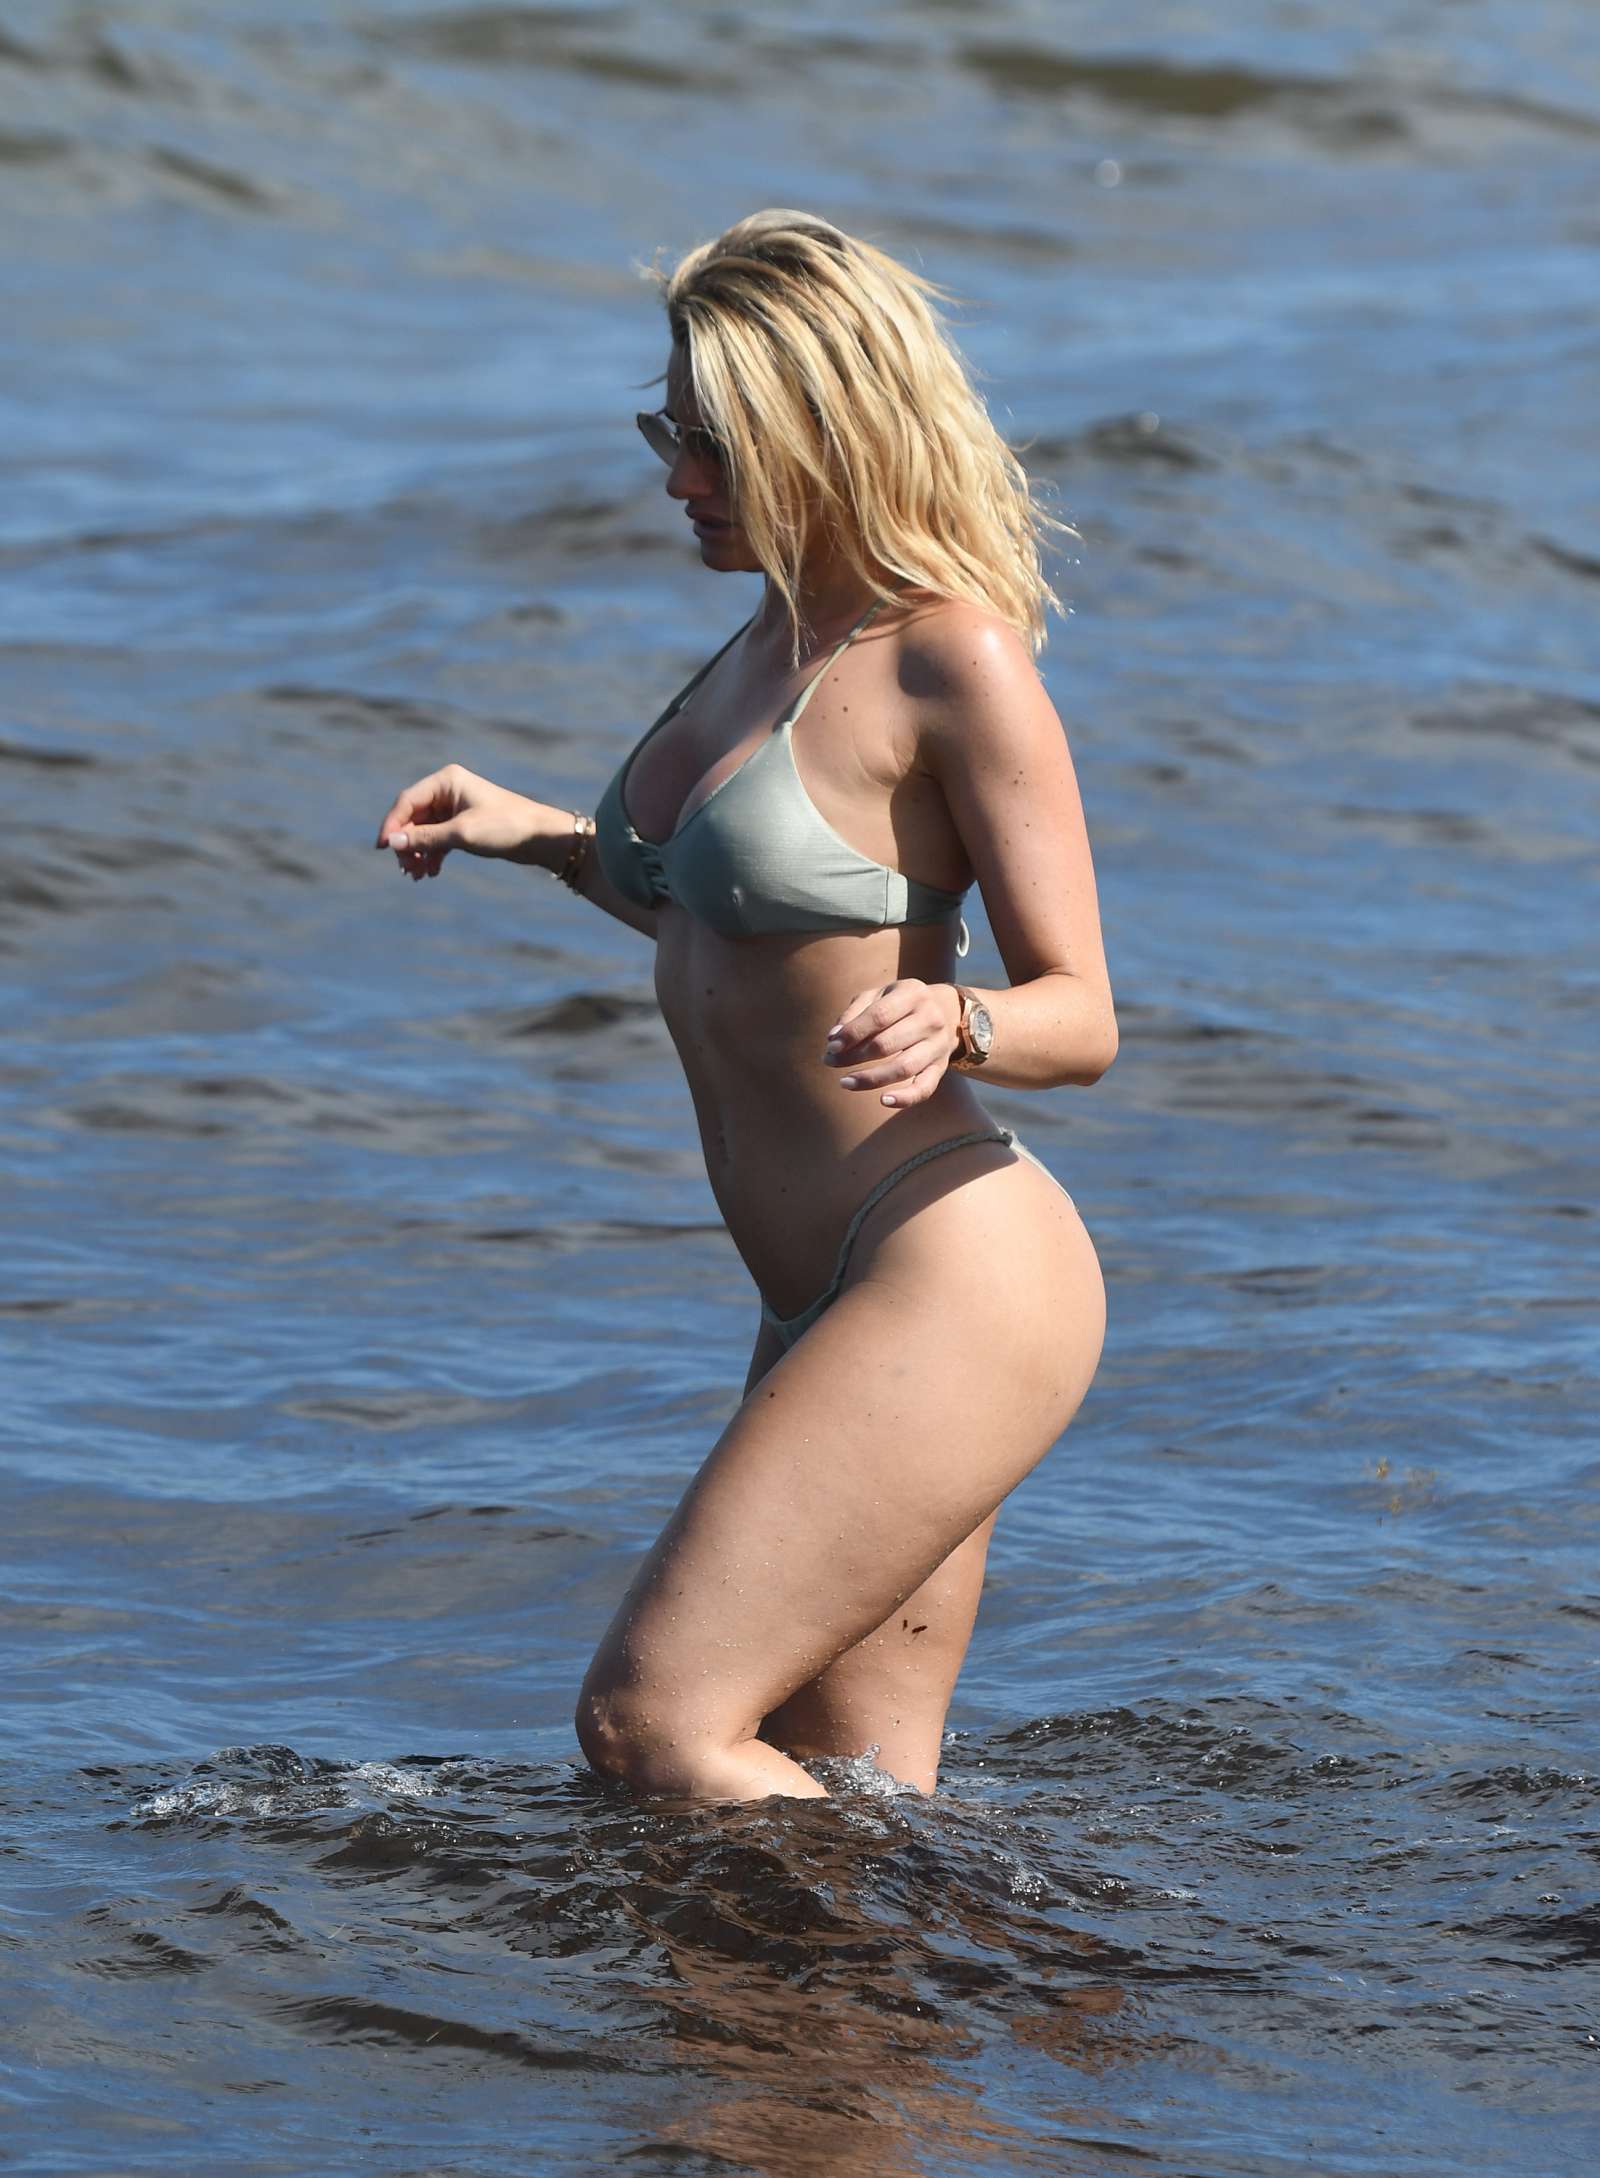 Danielle Armstrong in Tiny Bikini on the beach in Miami